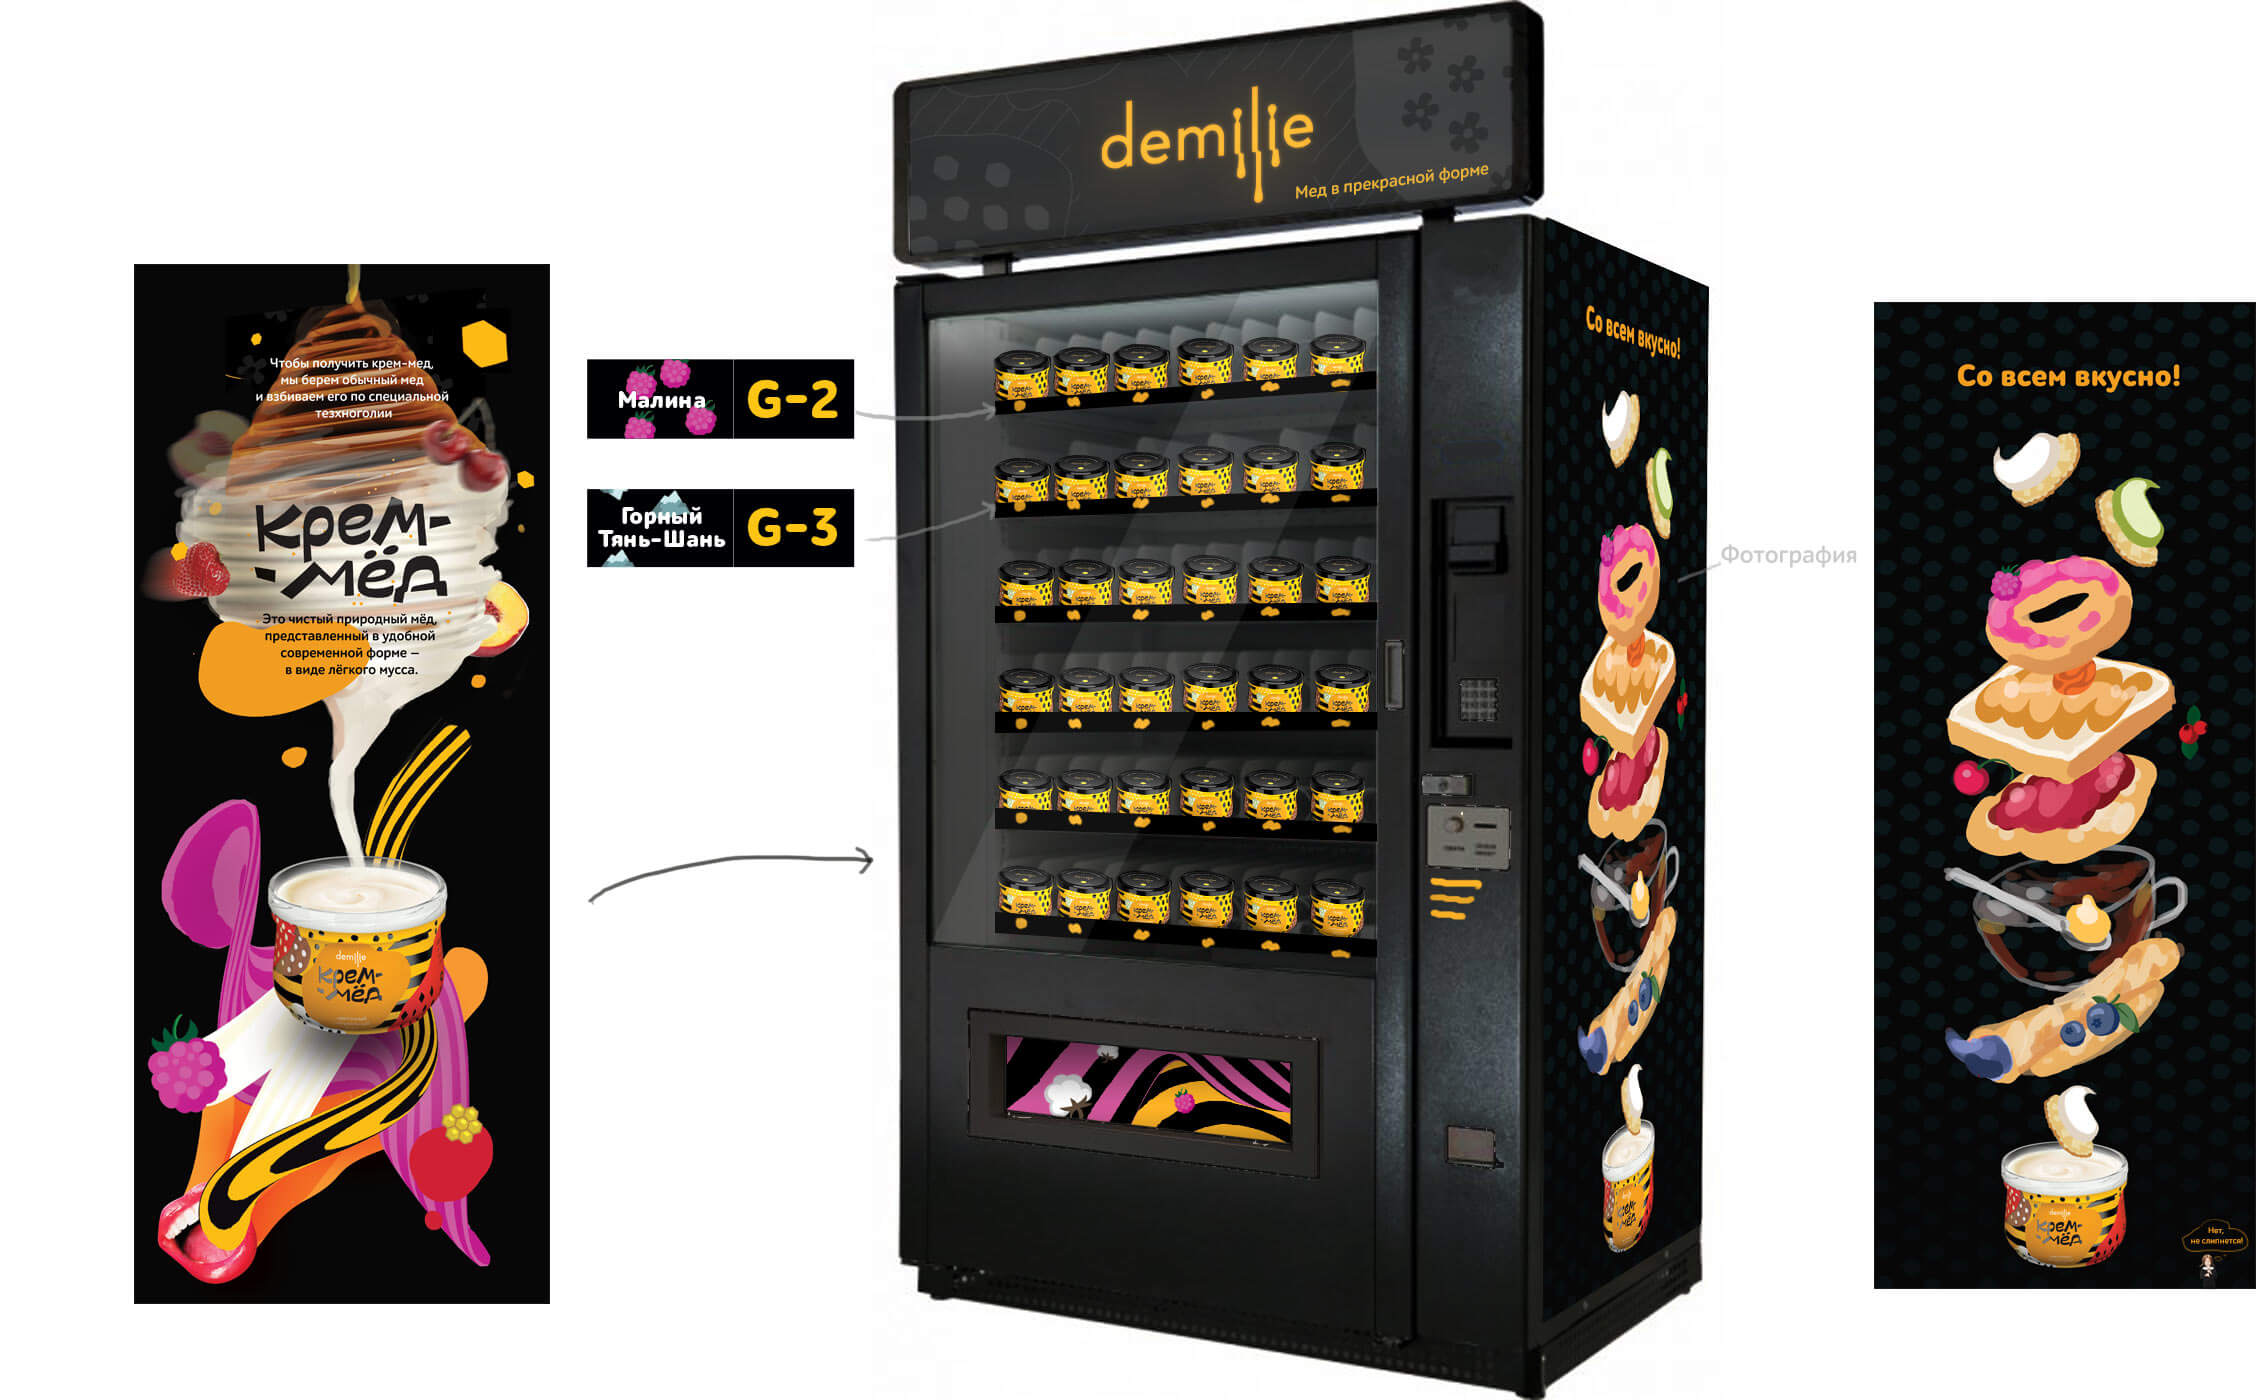 demilie vending process 04